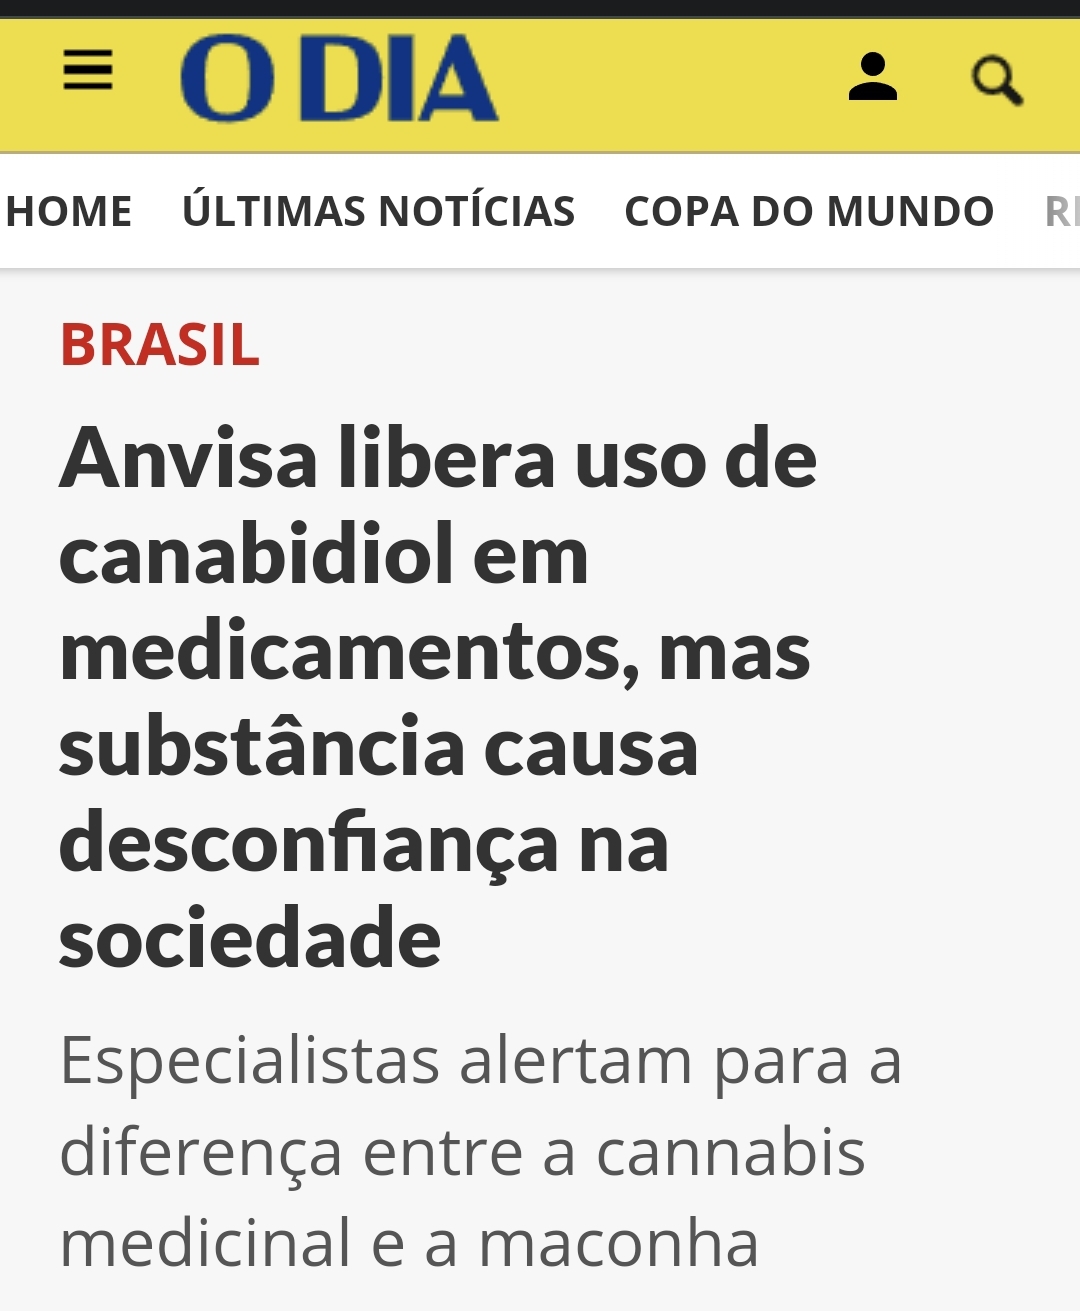 Anvisa simplifica regras para importação de medicamentos à base de cannabis  - Jornal O Globo